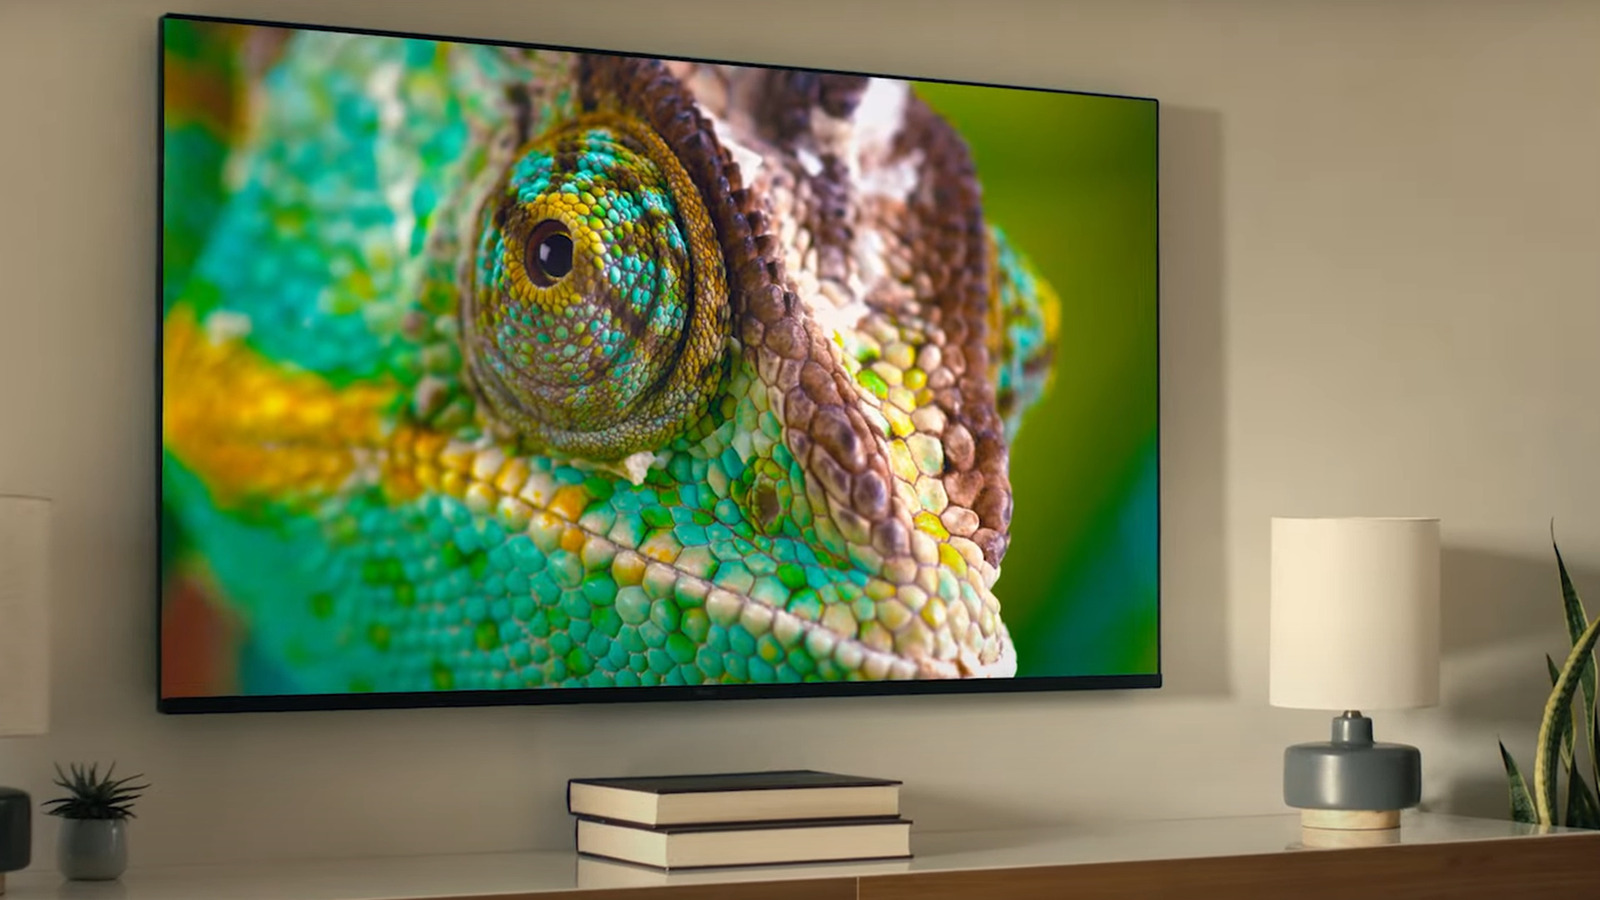 El nuevo televisor de 120 Hz de Roku podría ser la alternativa de marco Samsung más barata que estaba esperando